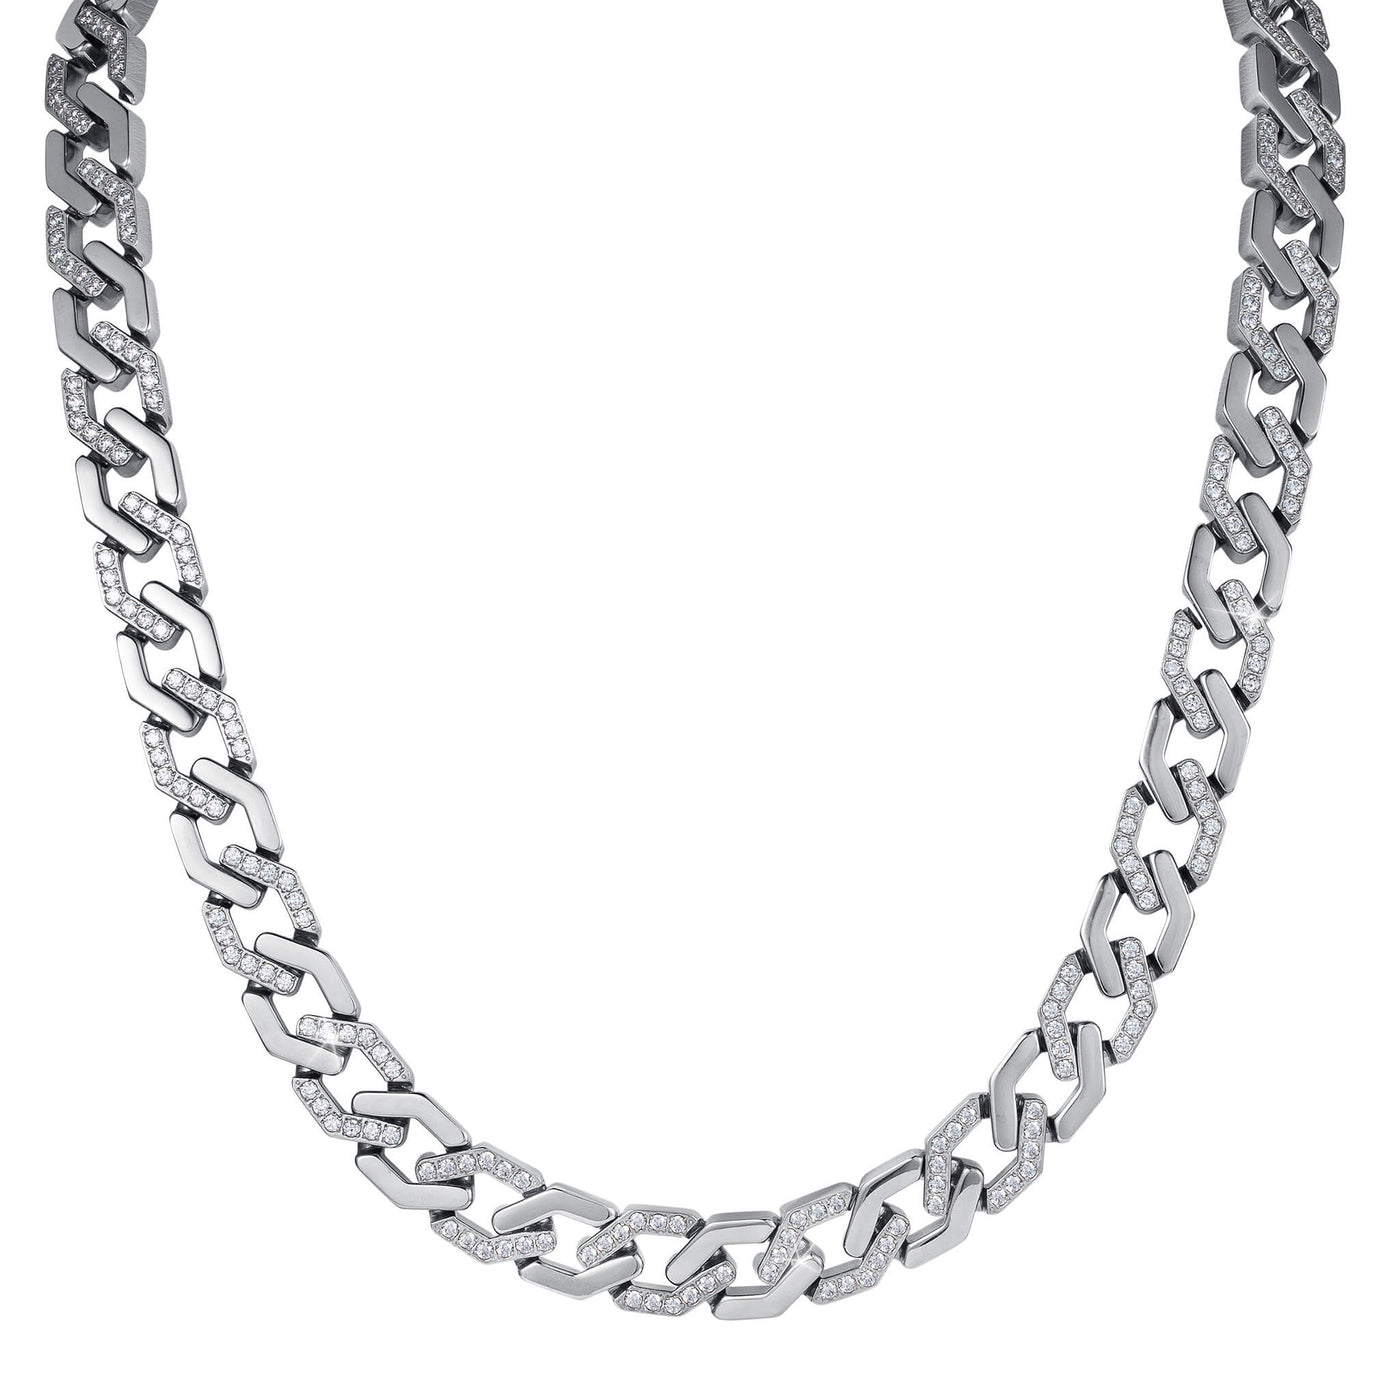 Diamondback Necklace